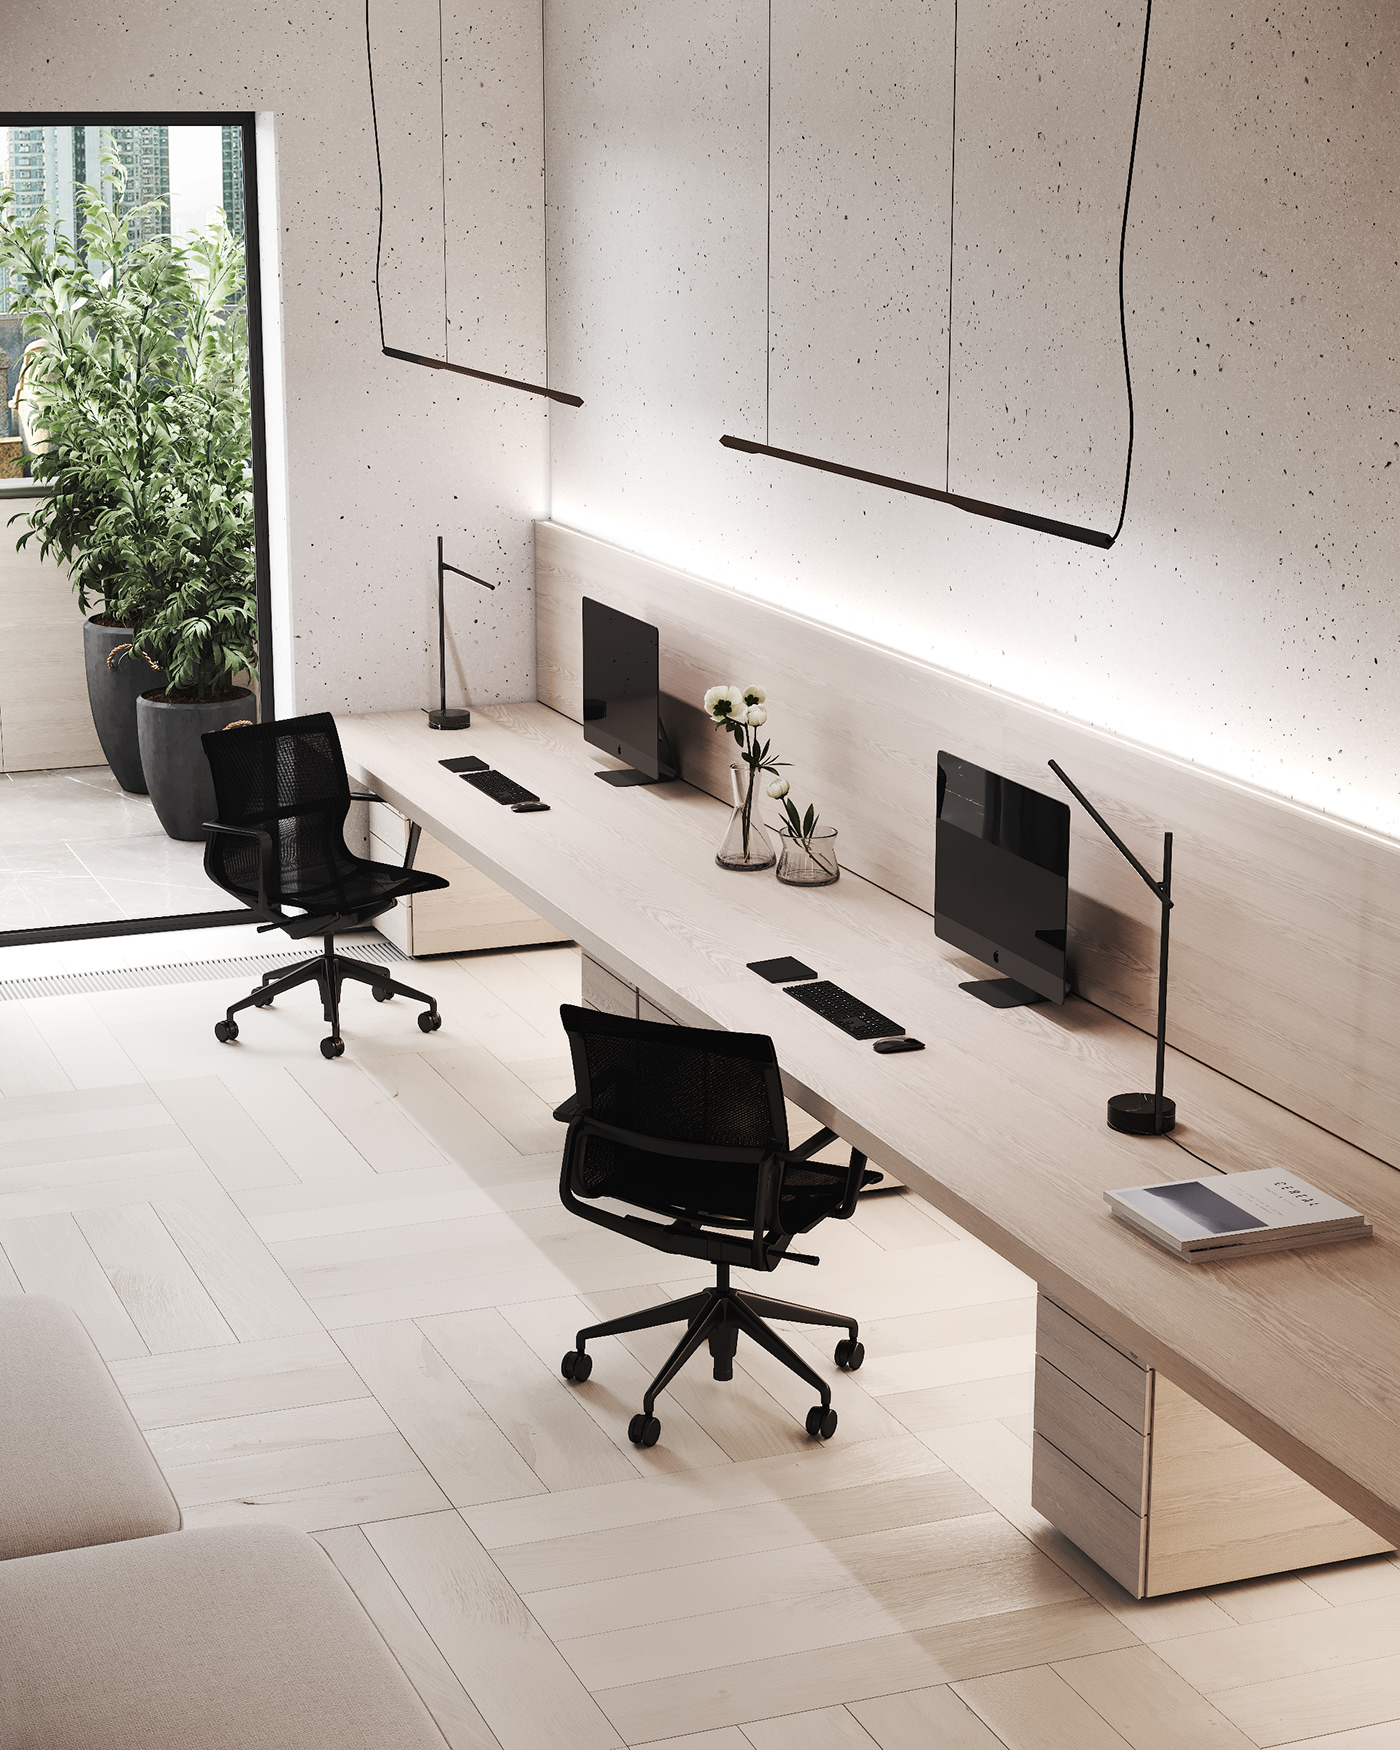 3D 3ds max CGI concrete design Interior interior design  setup wood workspace